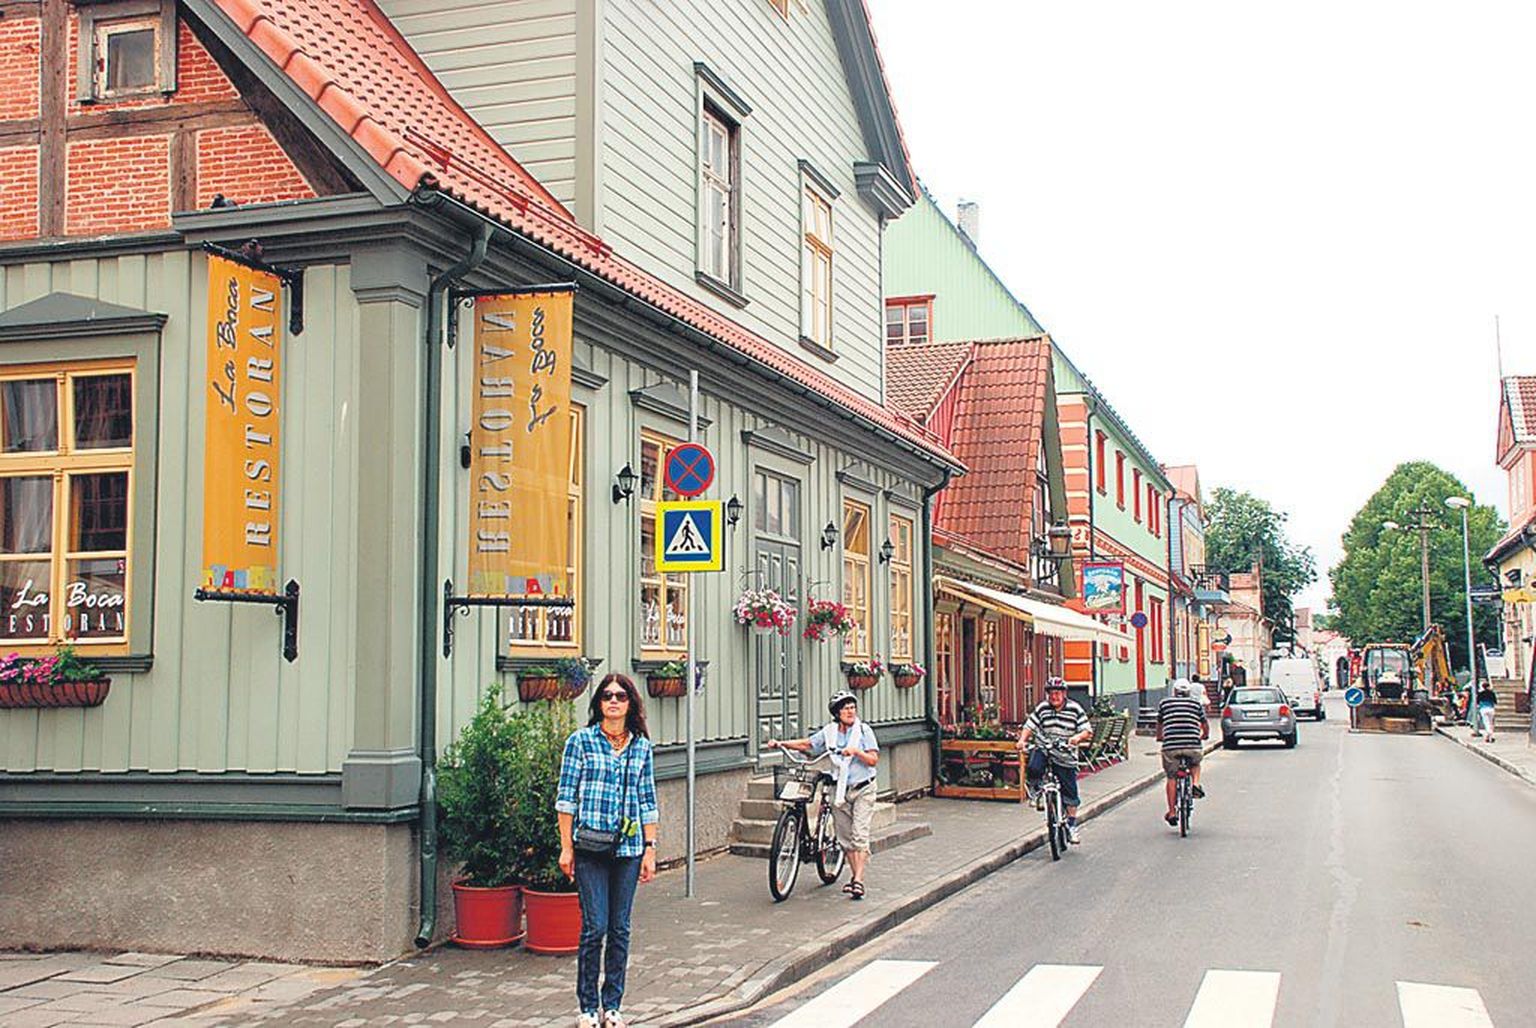 Kuninga tänav rajati Pärnusse 17. sajandil. Esimesi krunte hakati tänavaservadele välja jagama 1674. aastal. Tänav ise oli tähtis, ühendades kahte kindluslinna kolmest väravast.